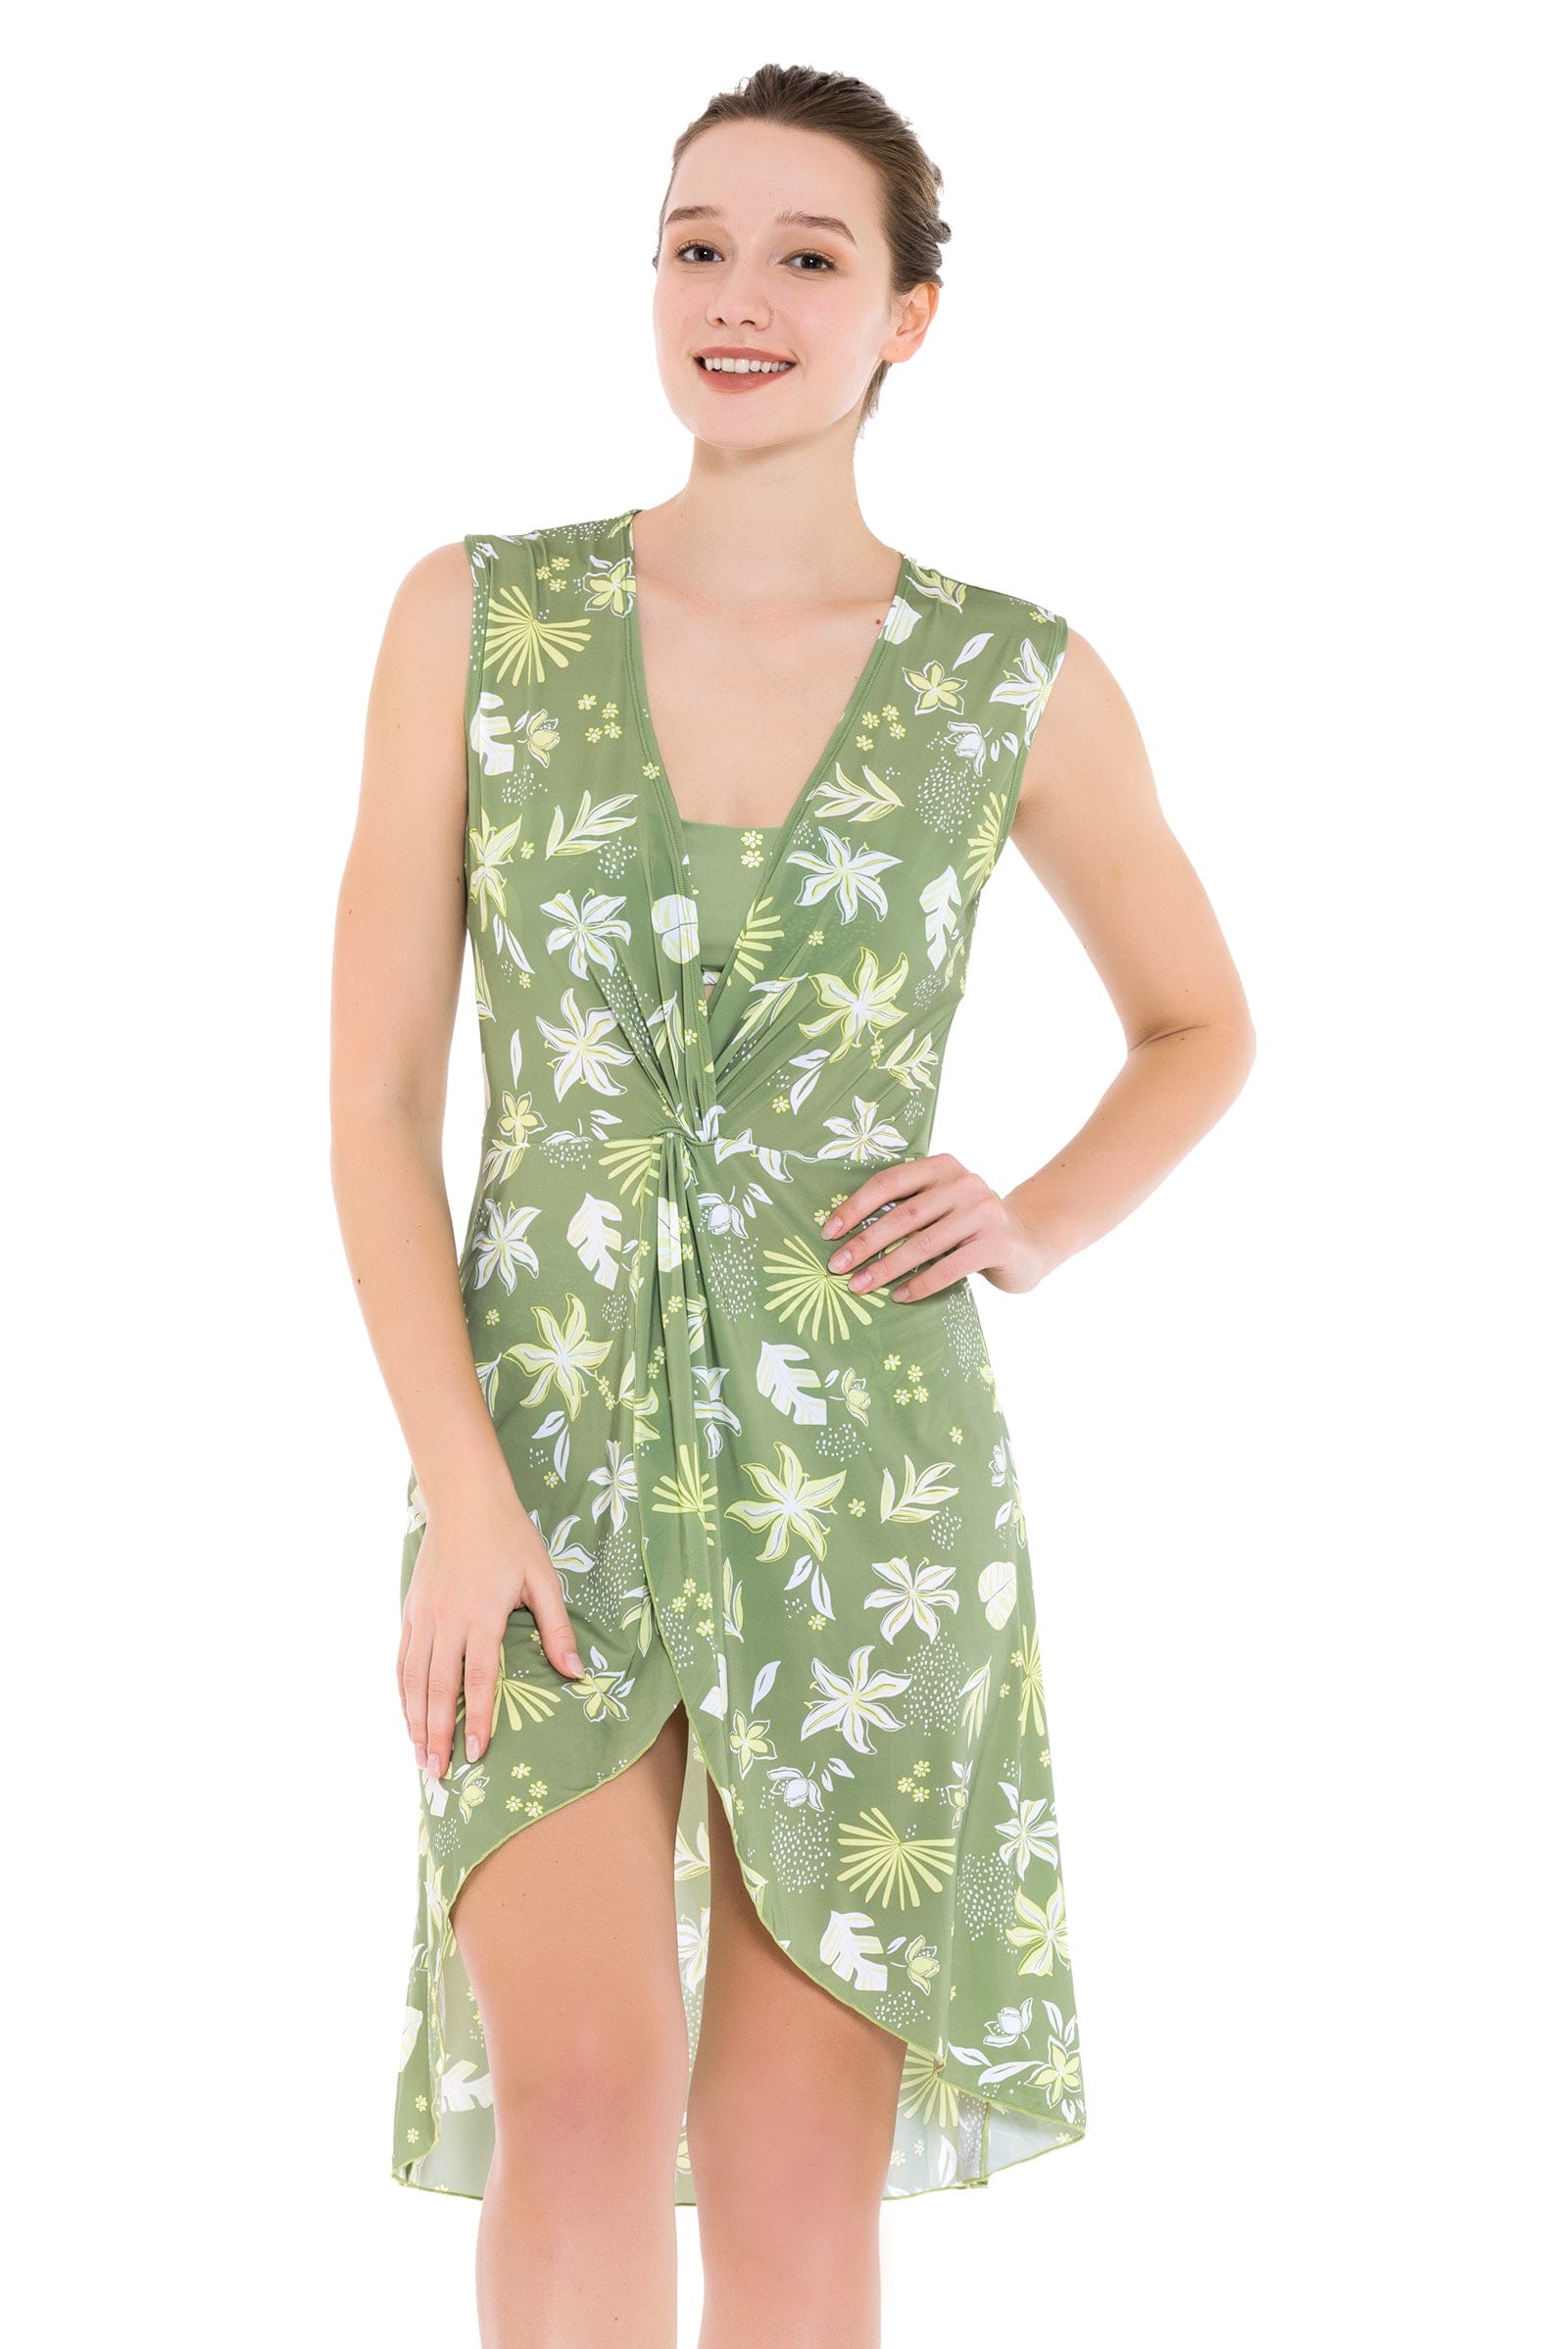 Beachwear South Pacific Palm Moss Dress - Sunseeker